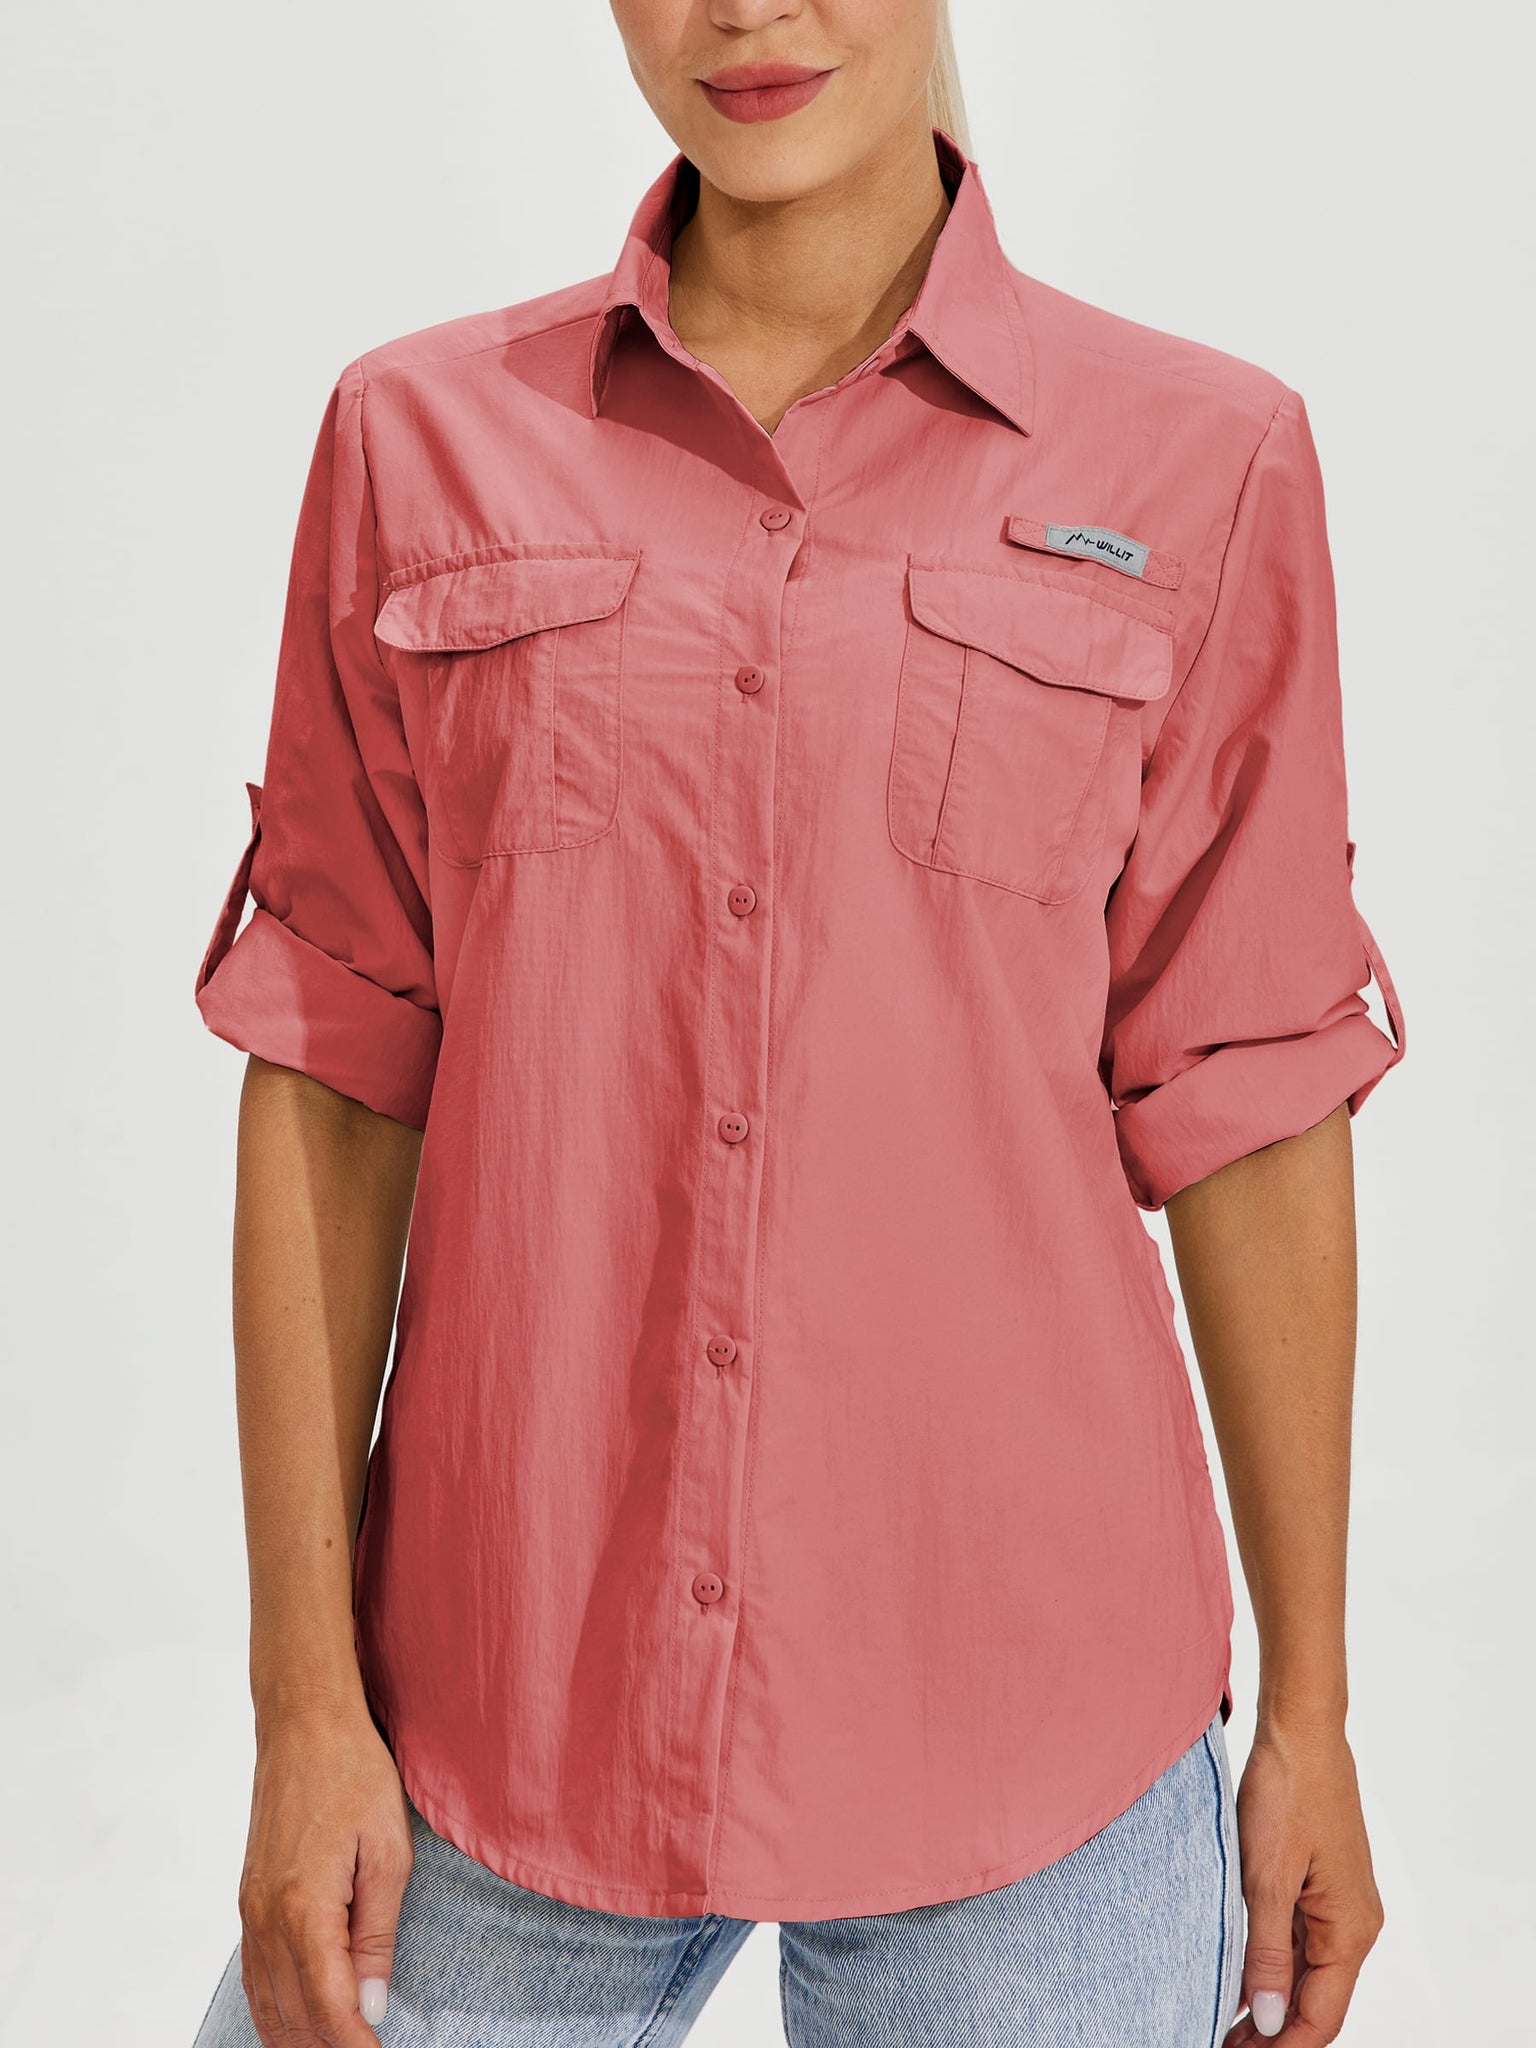 Women's Long Sleeve Fishing Shirt_Pink_model4